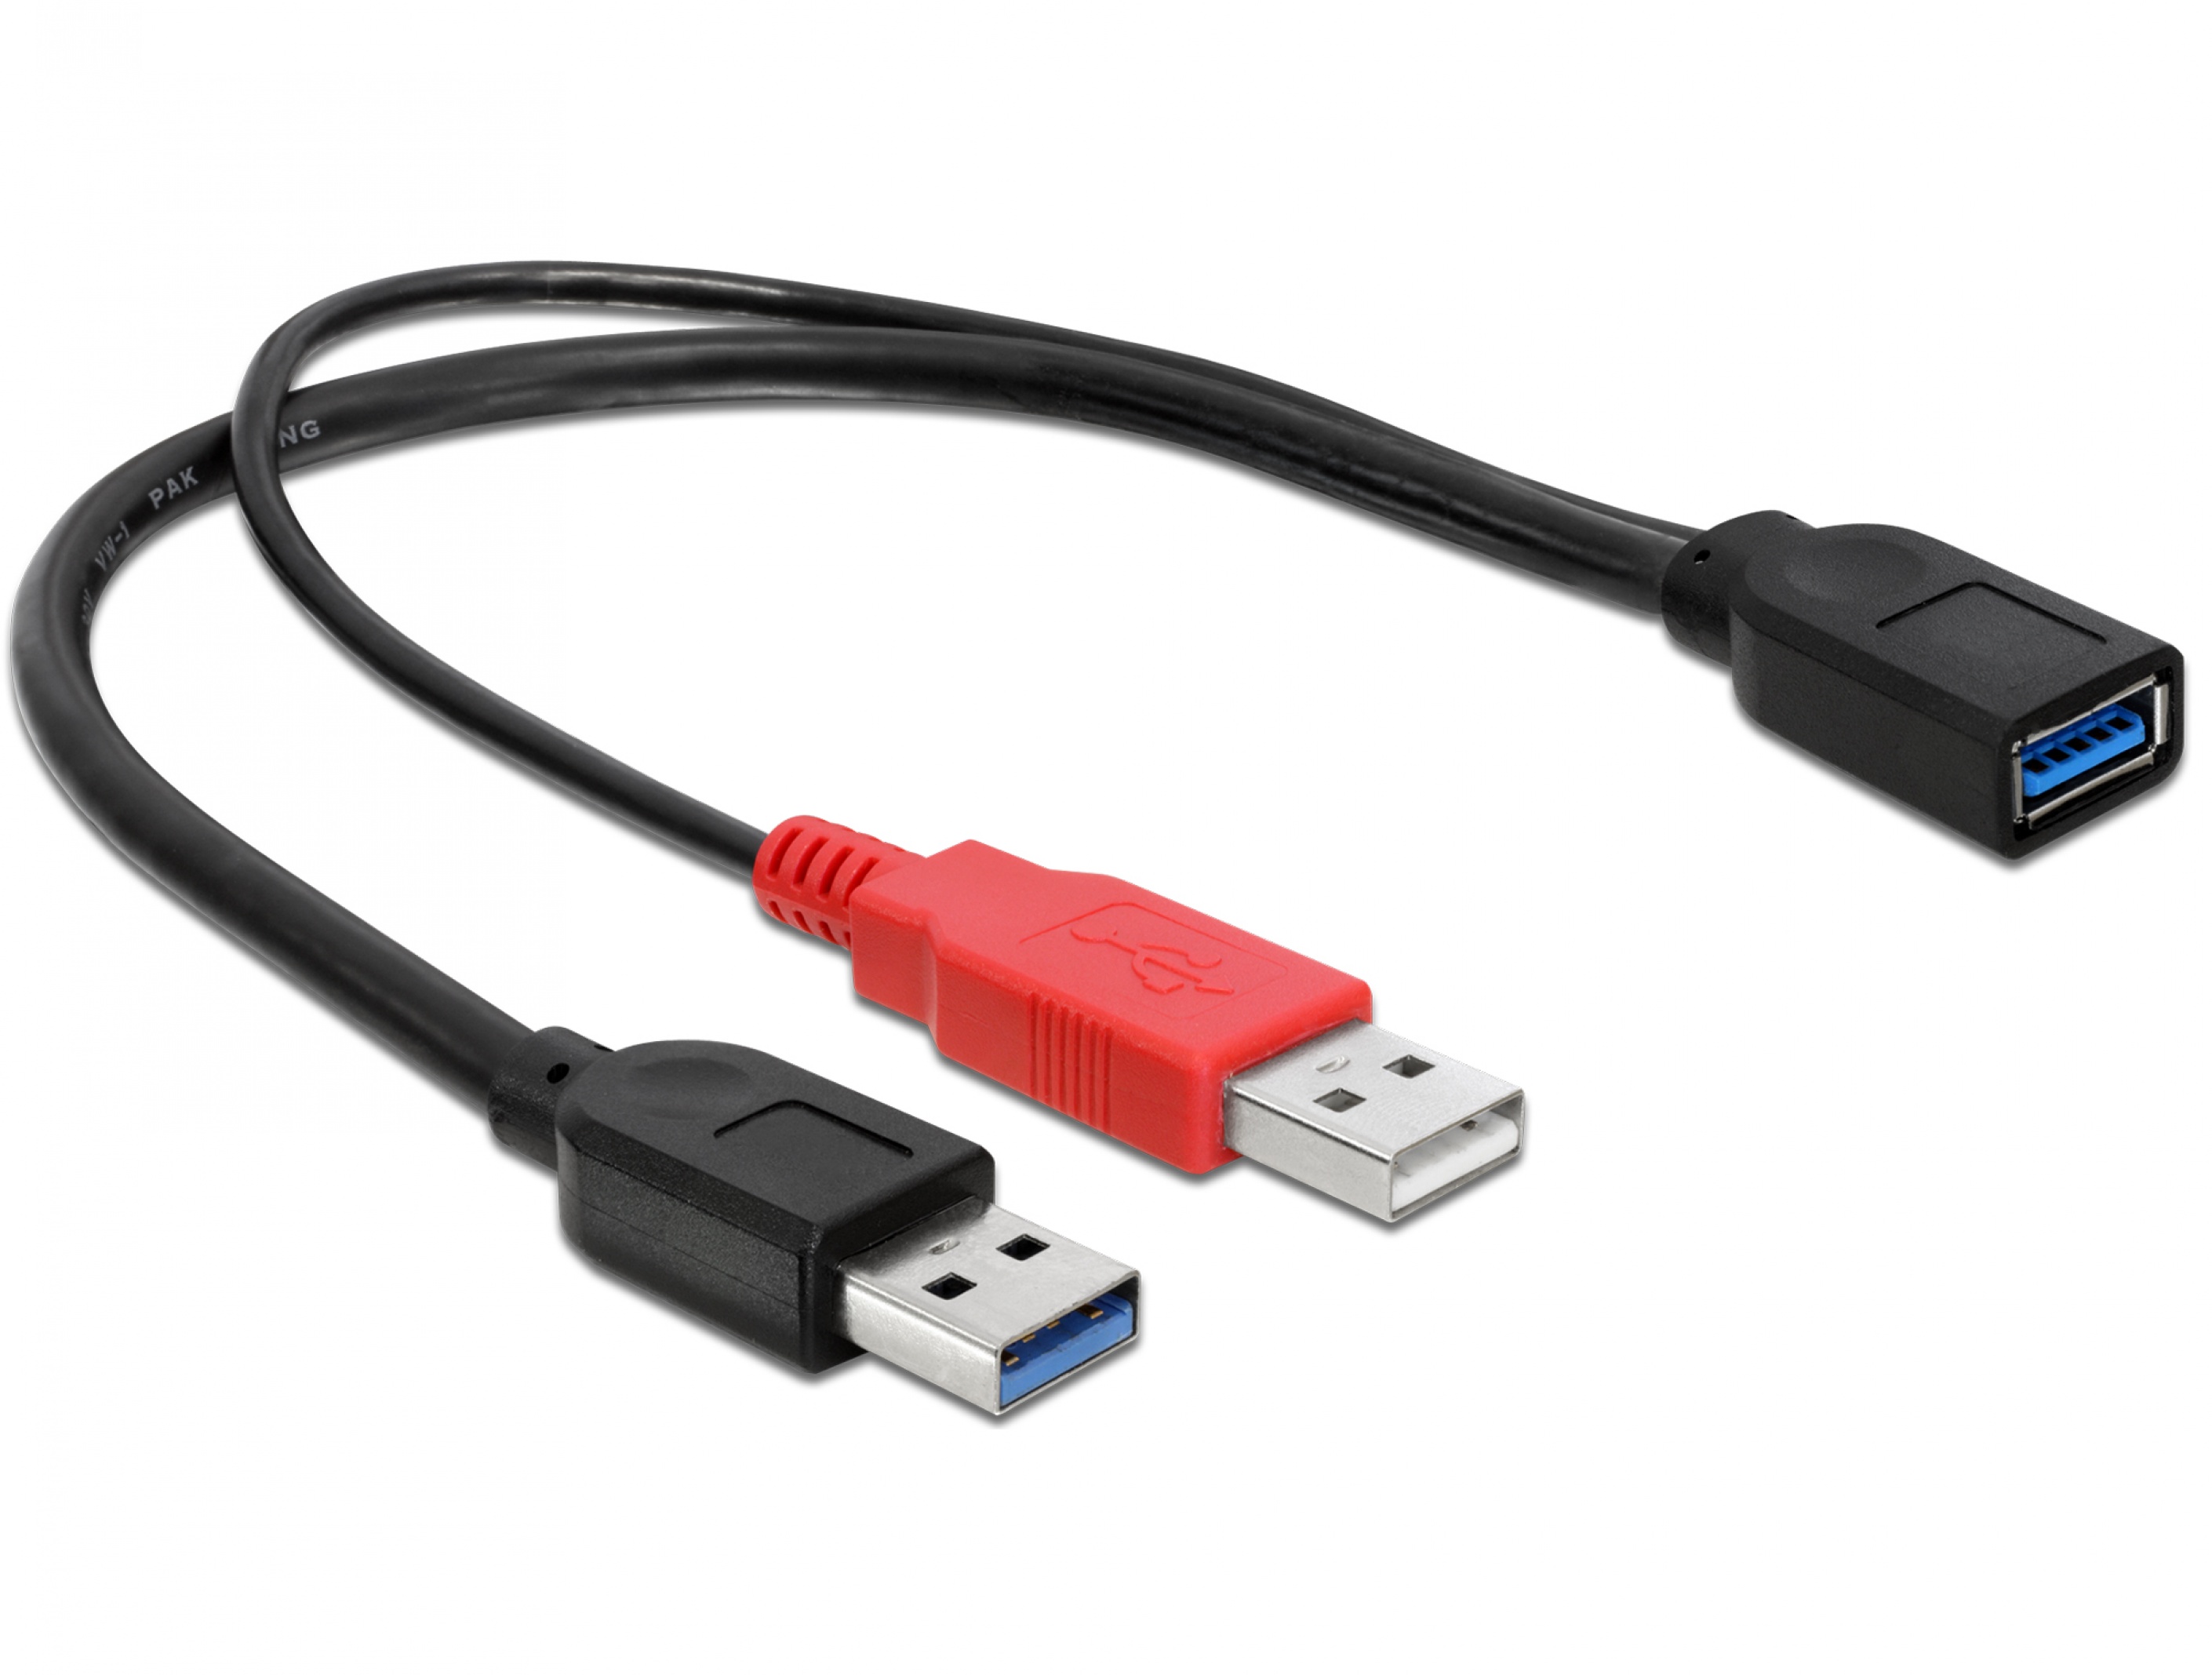 Parliament Huh physicist Cablu USB 3.0-A M la USB 3.0-A T+ USB 2.0-A T, Delock 83176